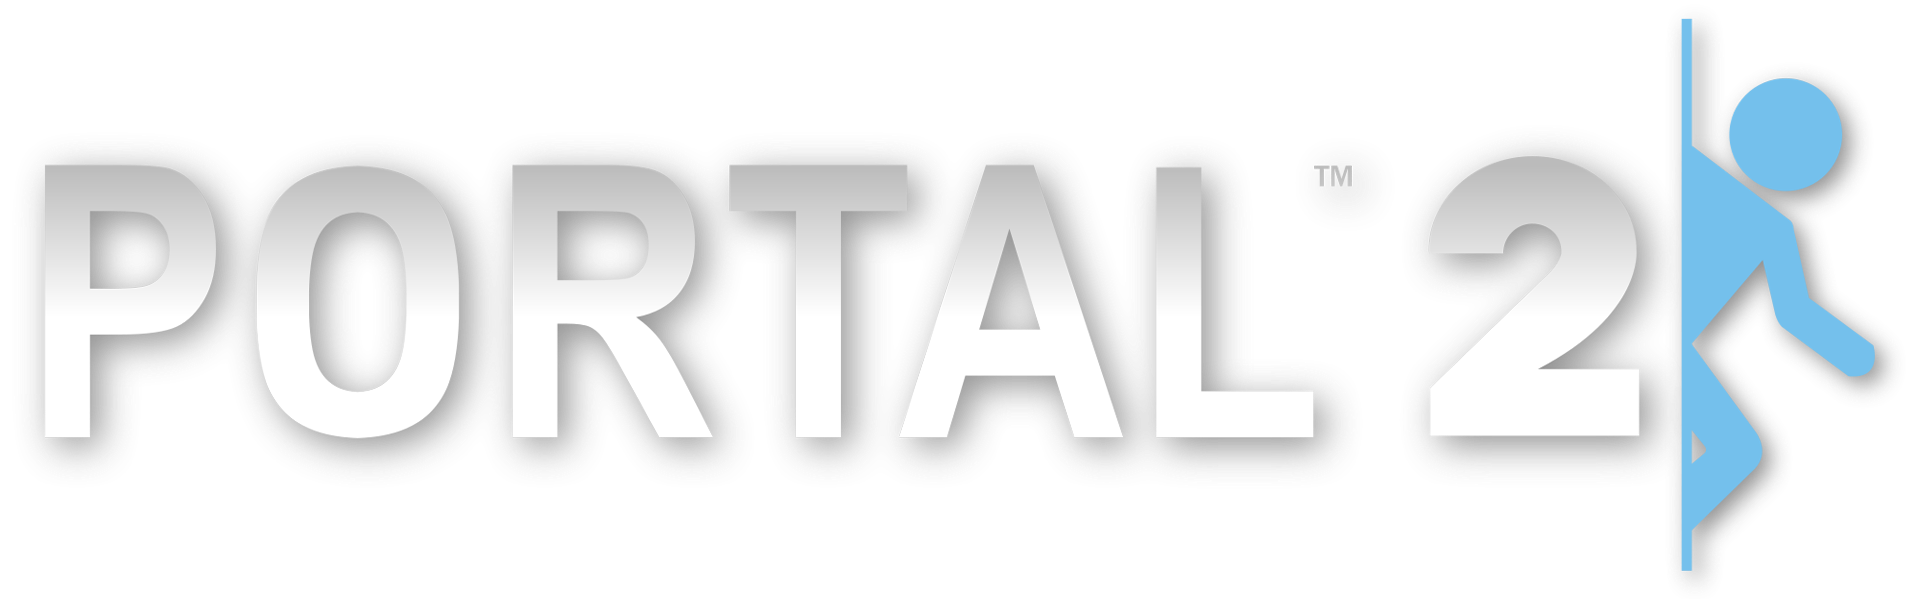 Portal 2 no menu фото 44